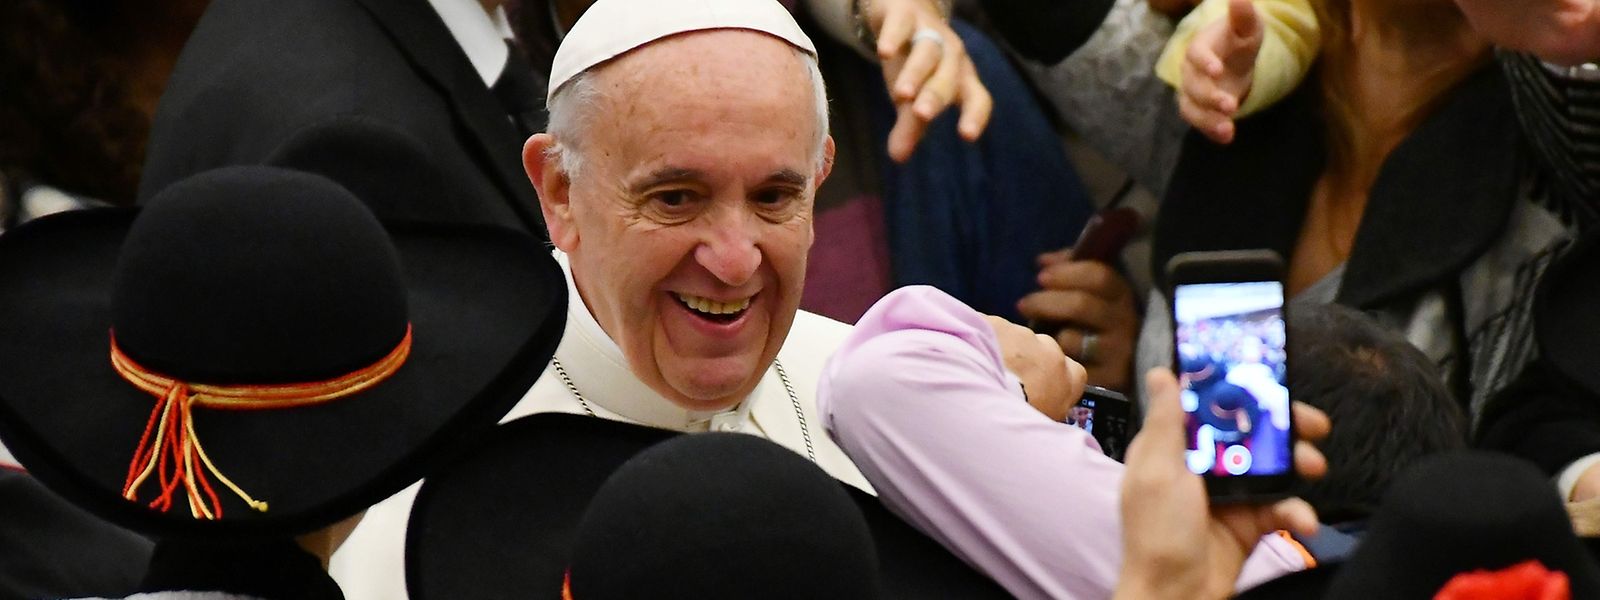 Papst Franziskus macht sich Gedanken über wahrheitsverzerrende Berichterstattung.